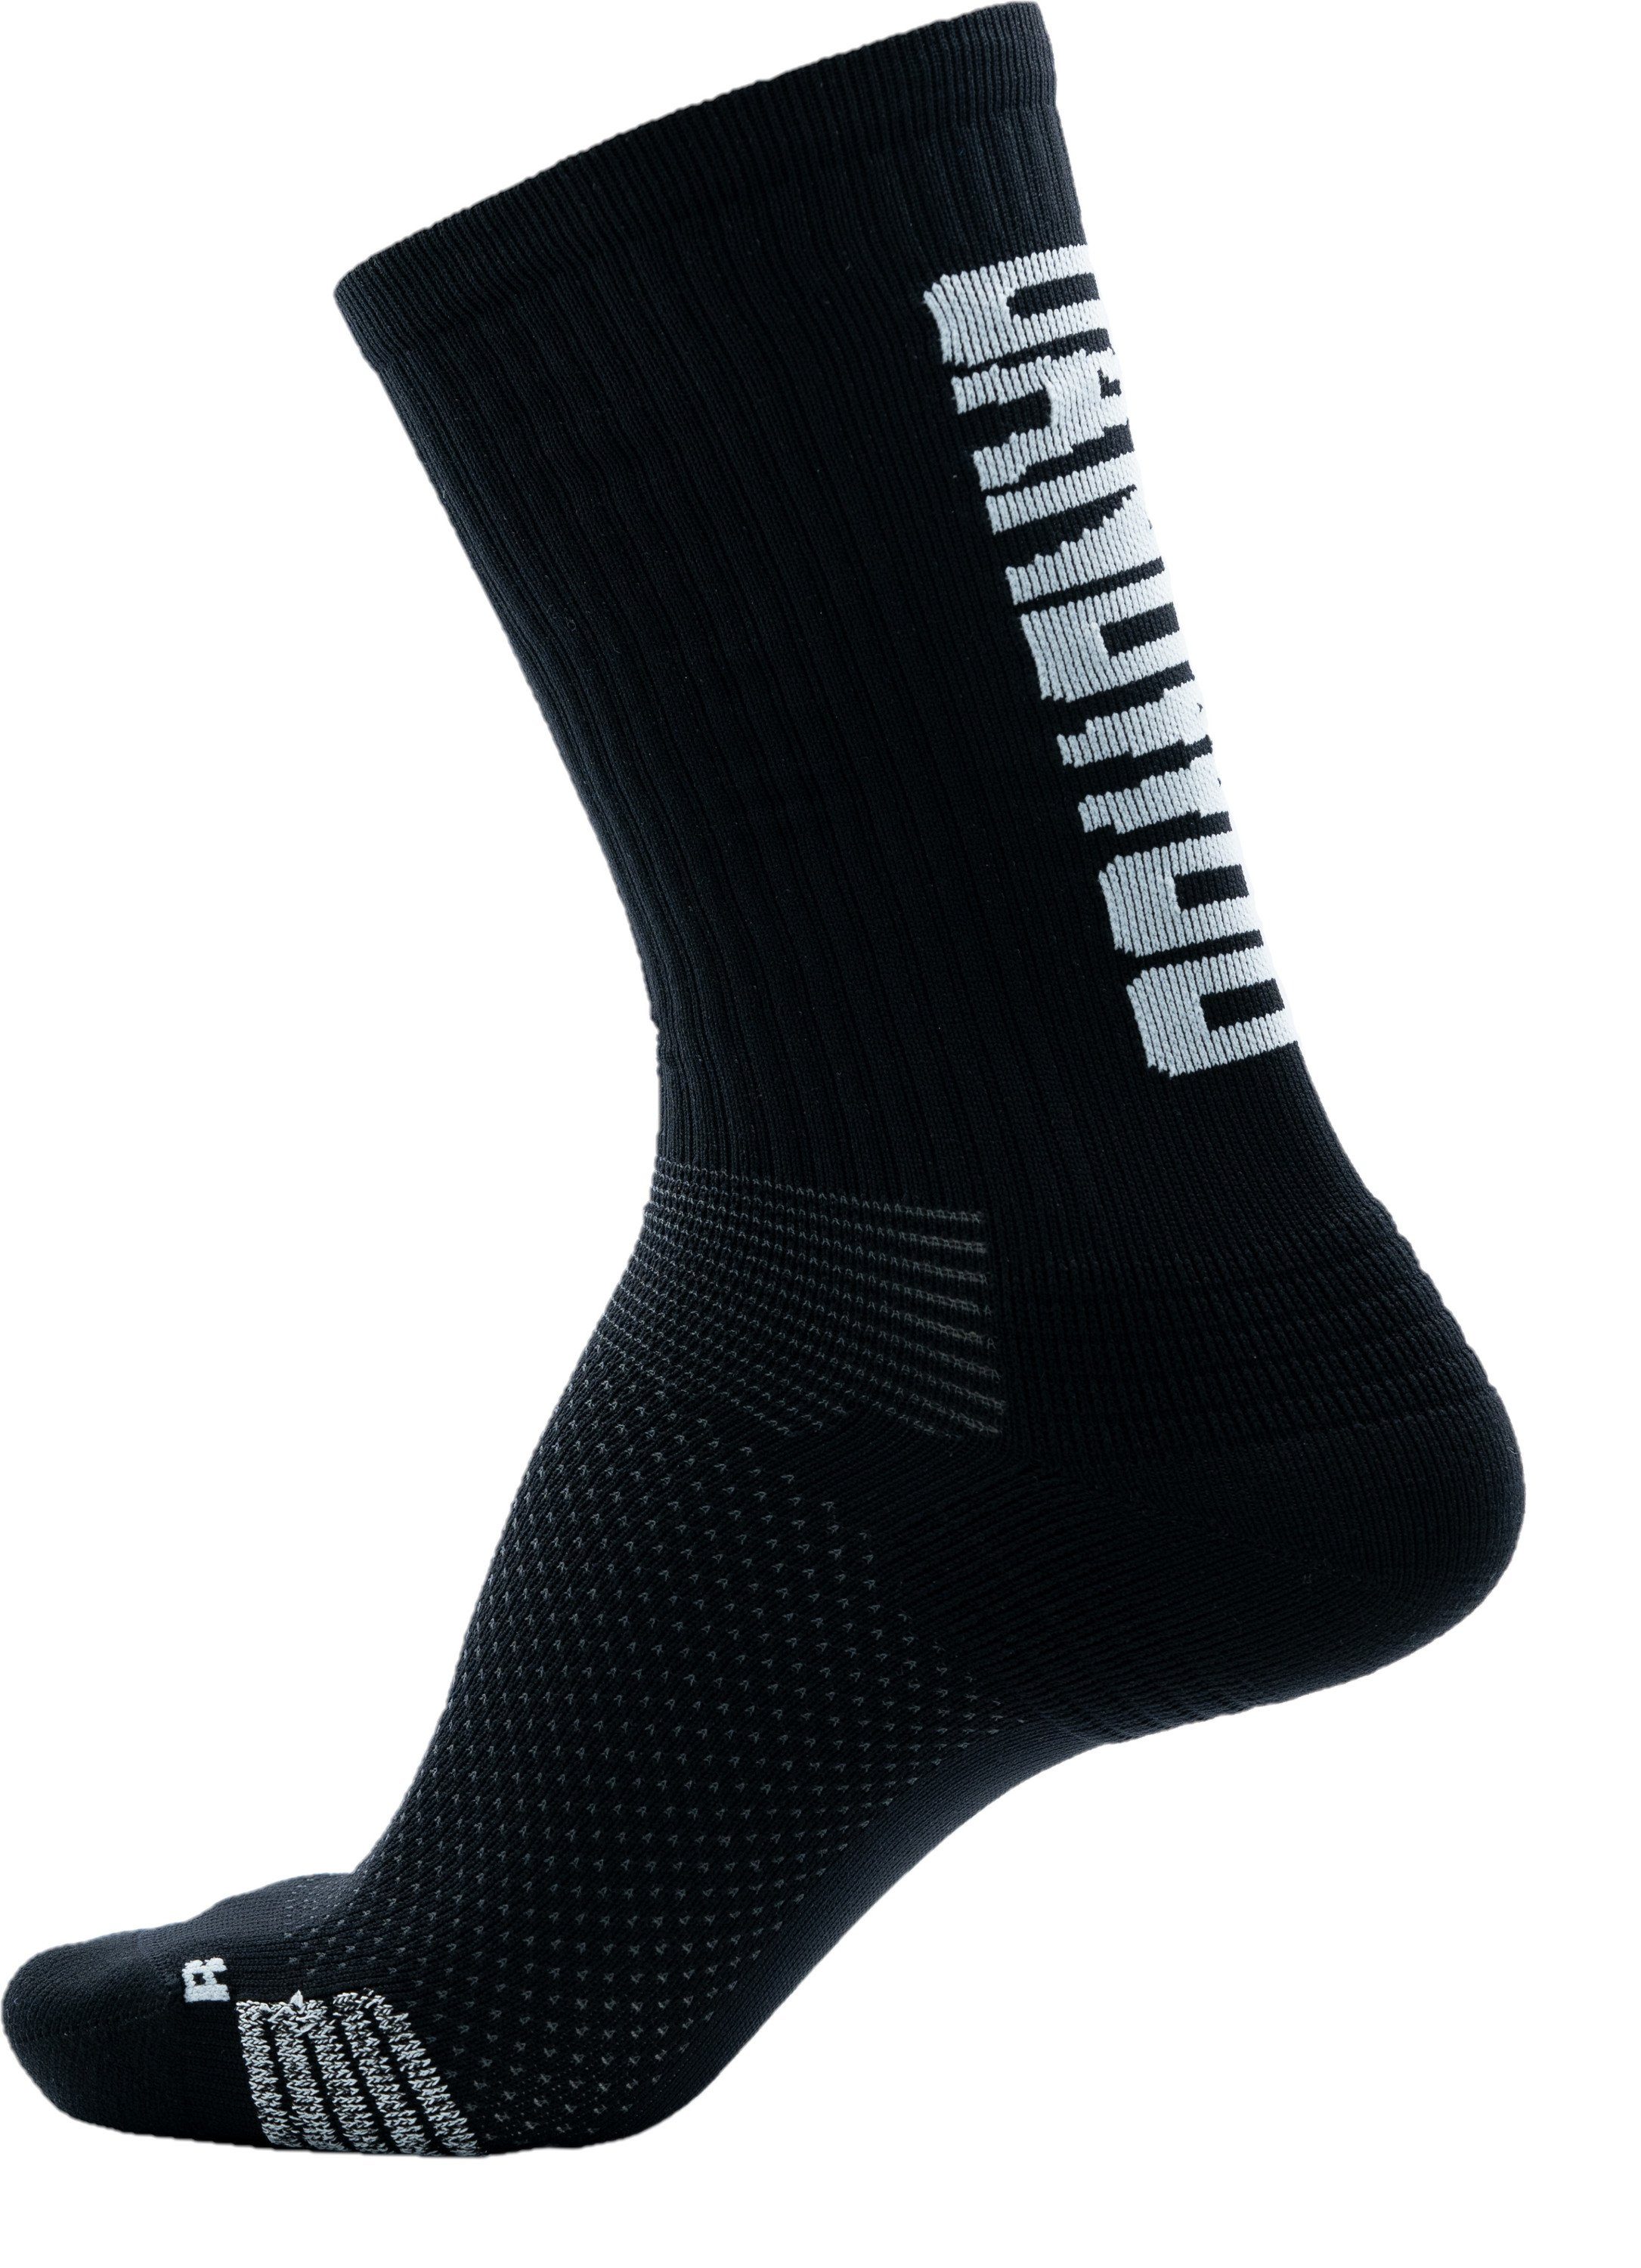 Sport Socks Funktionssocken 3701322042 mint UANDWOO Farben Größen und UANDWOO verschiedene Performance